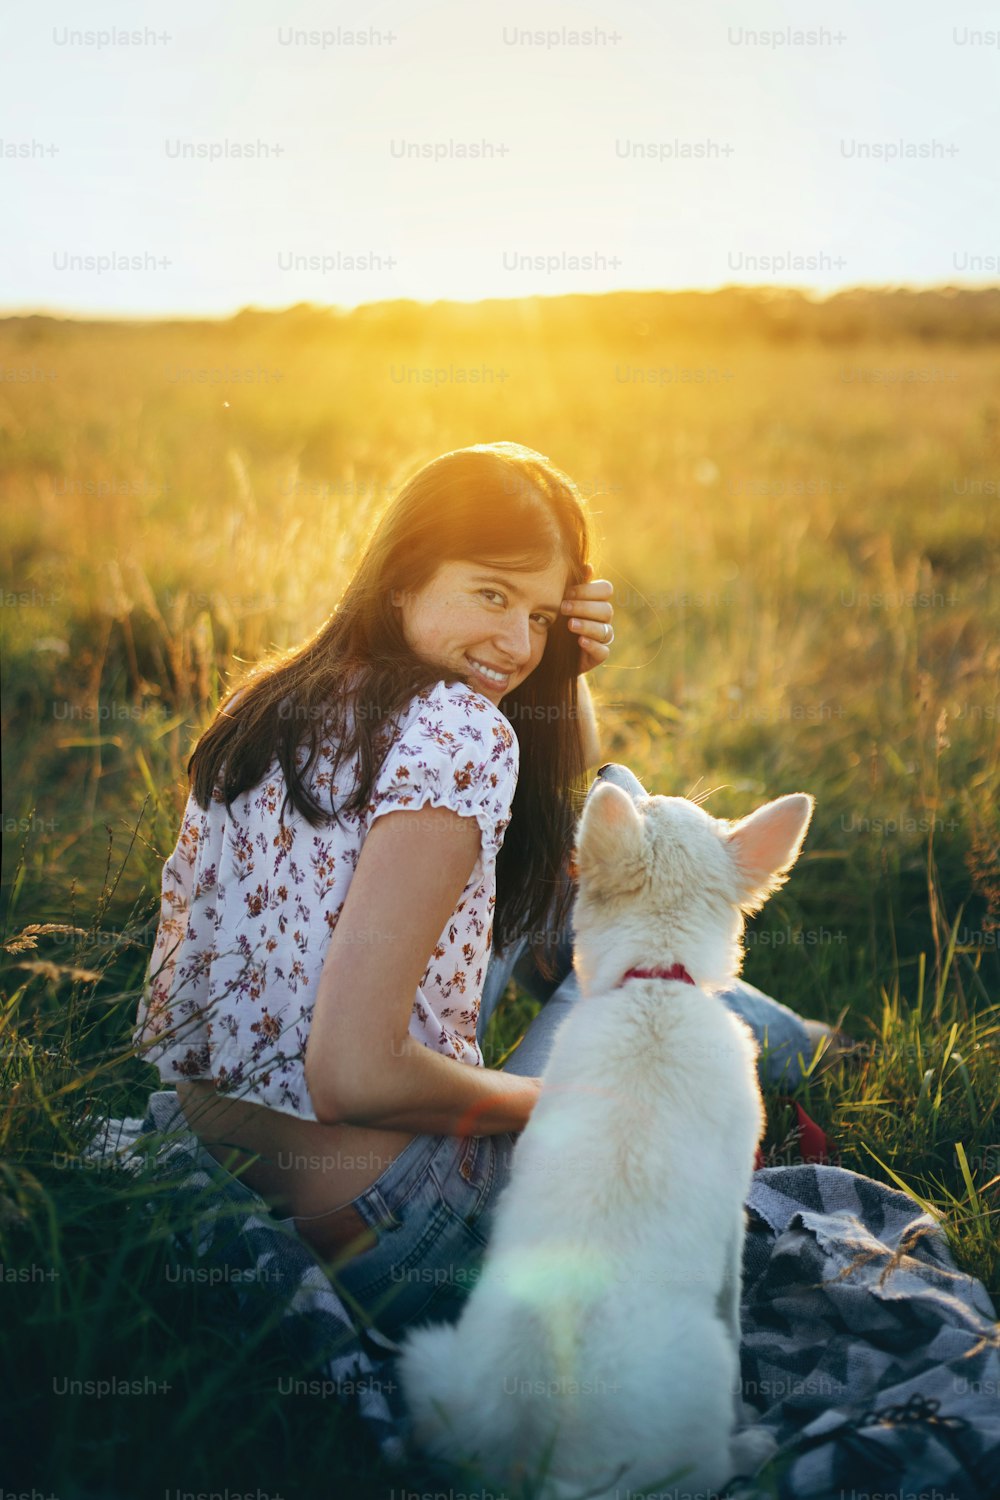 행복한 여자는 일몰 따뜻한 빛 아래 여름 초원에서 귀여운 하얀 강아지와 함께 앉아 있다. 피크닉에서 사랑스러운 푹신한 강아지와 함께 휴식을 취하는 세련된 소녀. 애완 동물과 함께하는 여름 여행